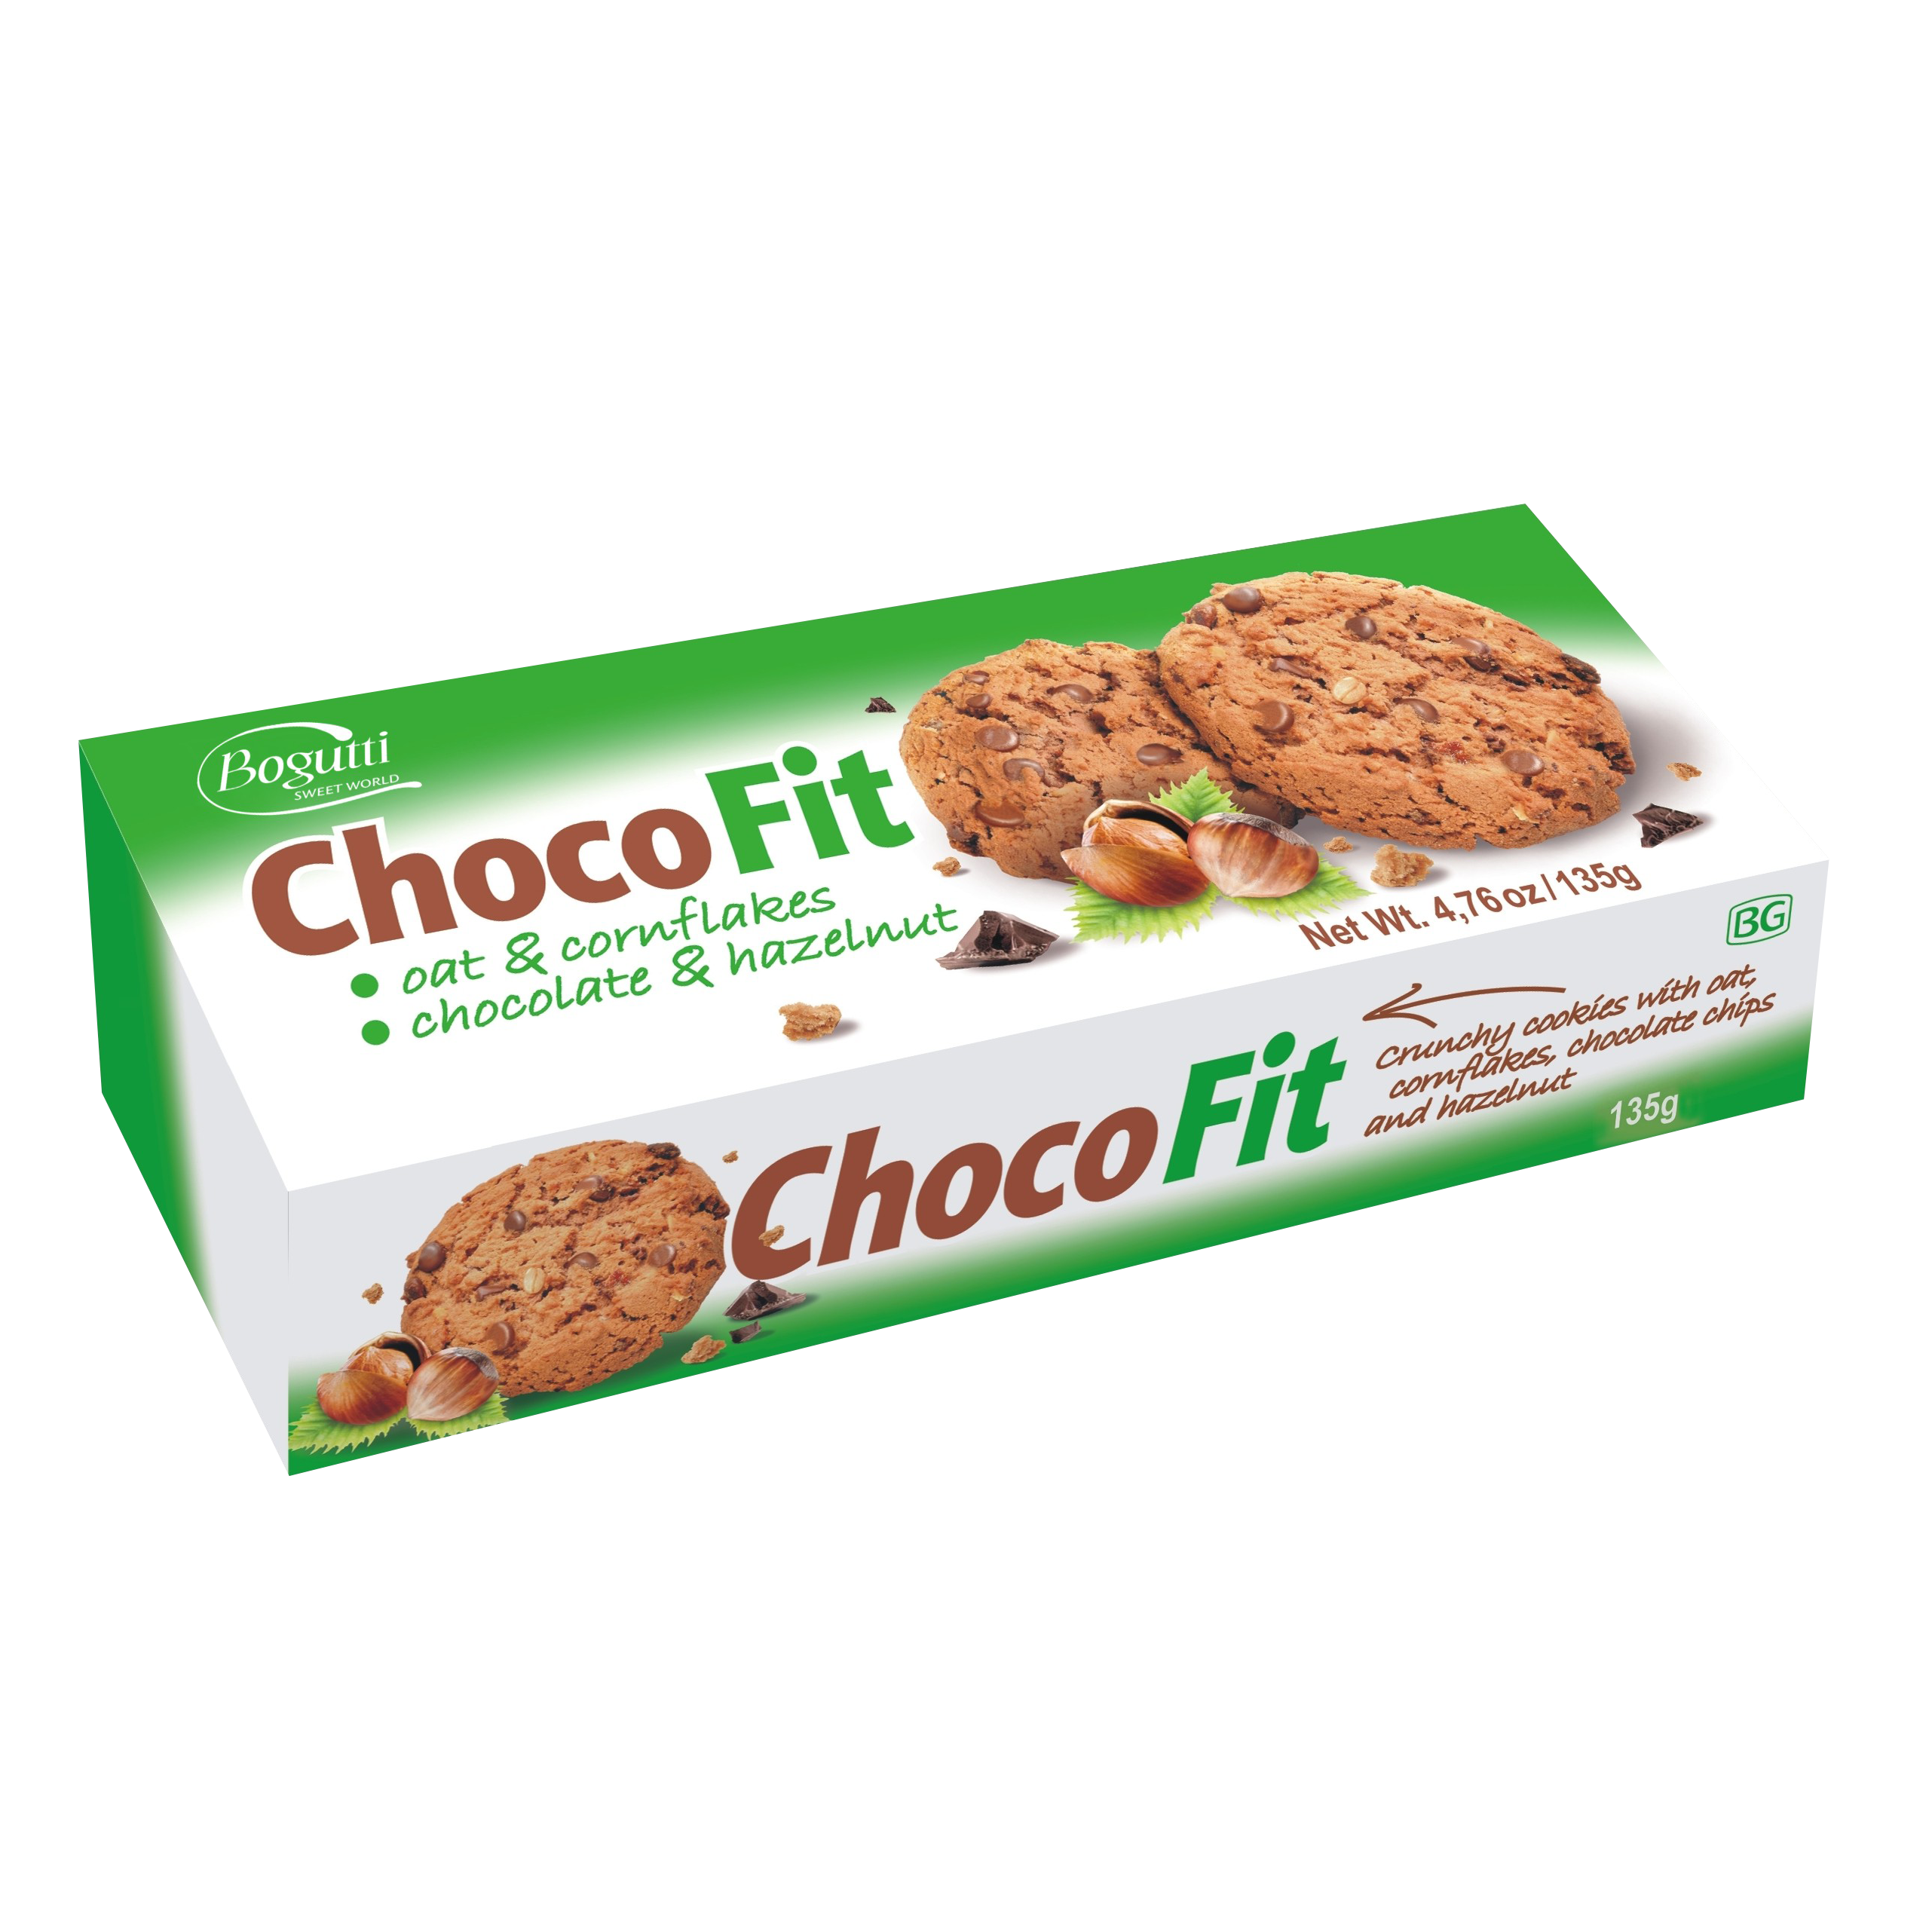 Choco Fit – Biscuits croquants aux flocons d’avoine et de maïs, chocolat et noisettes